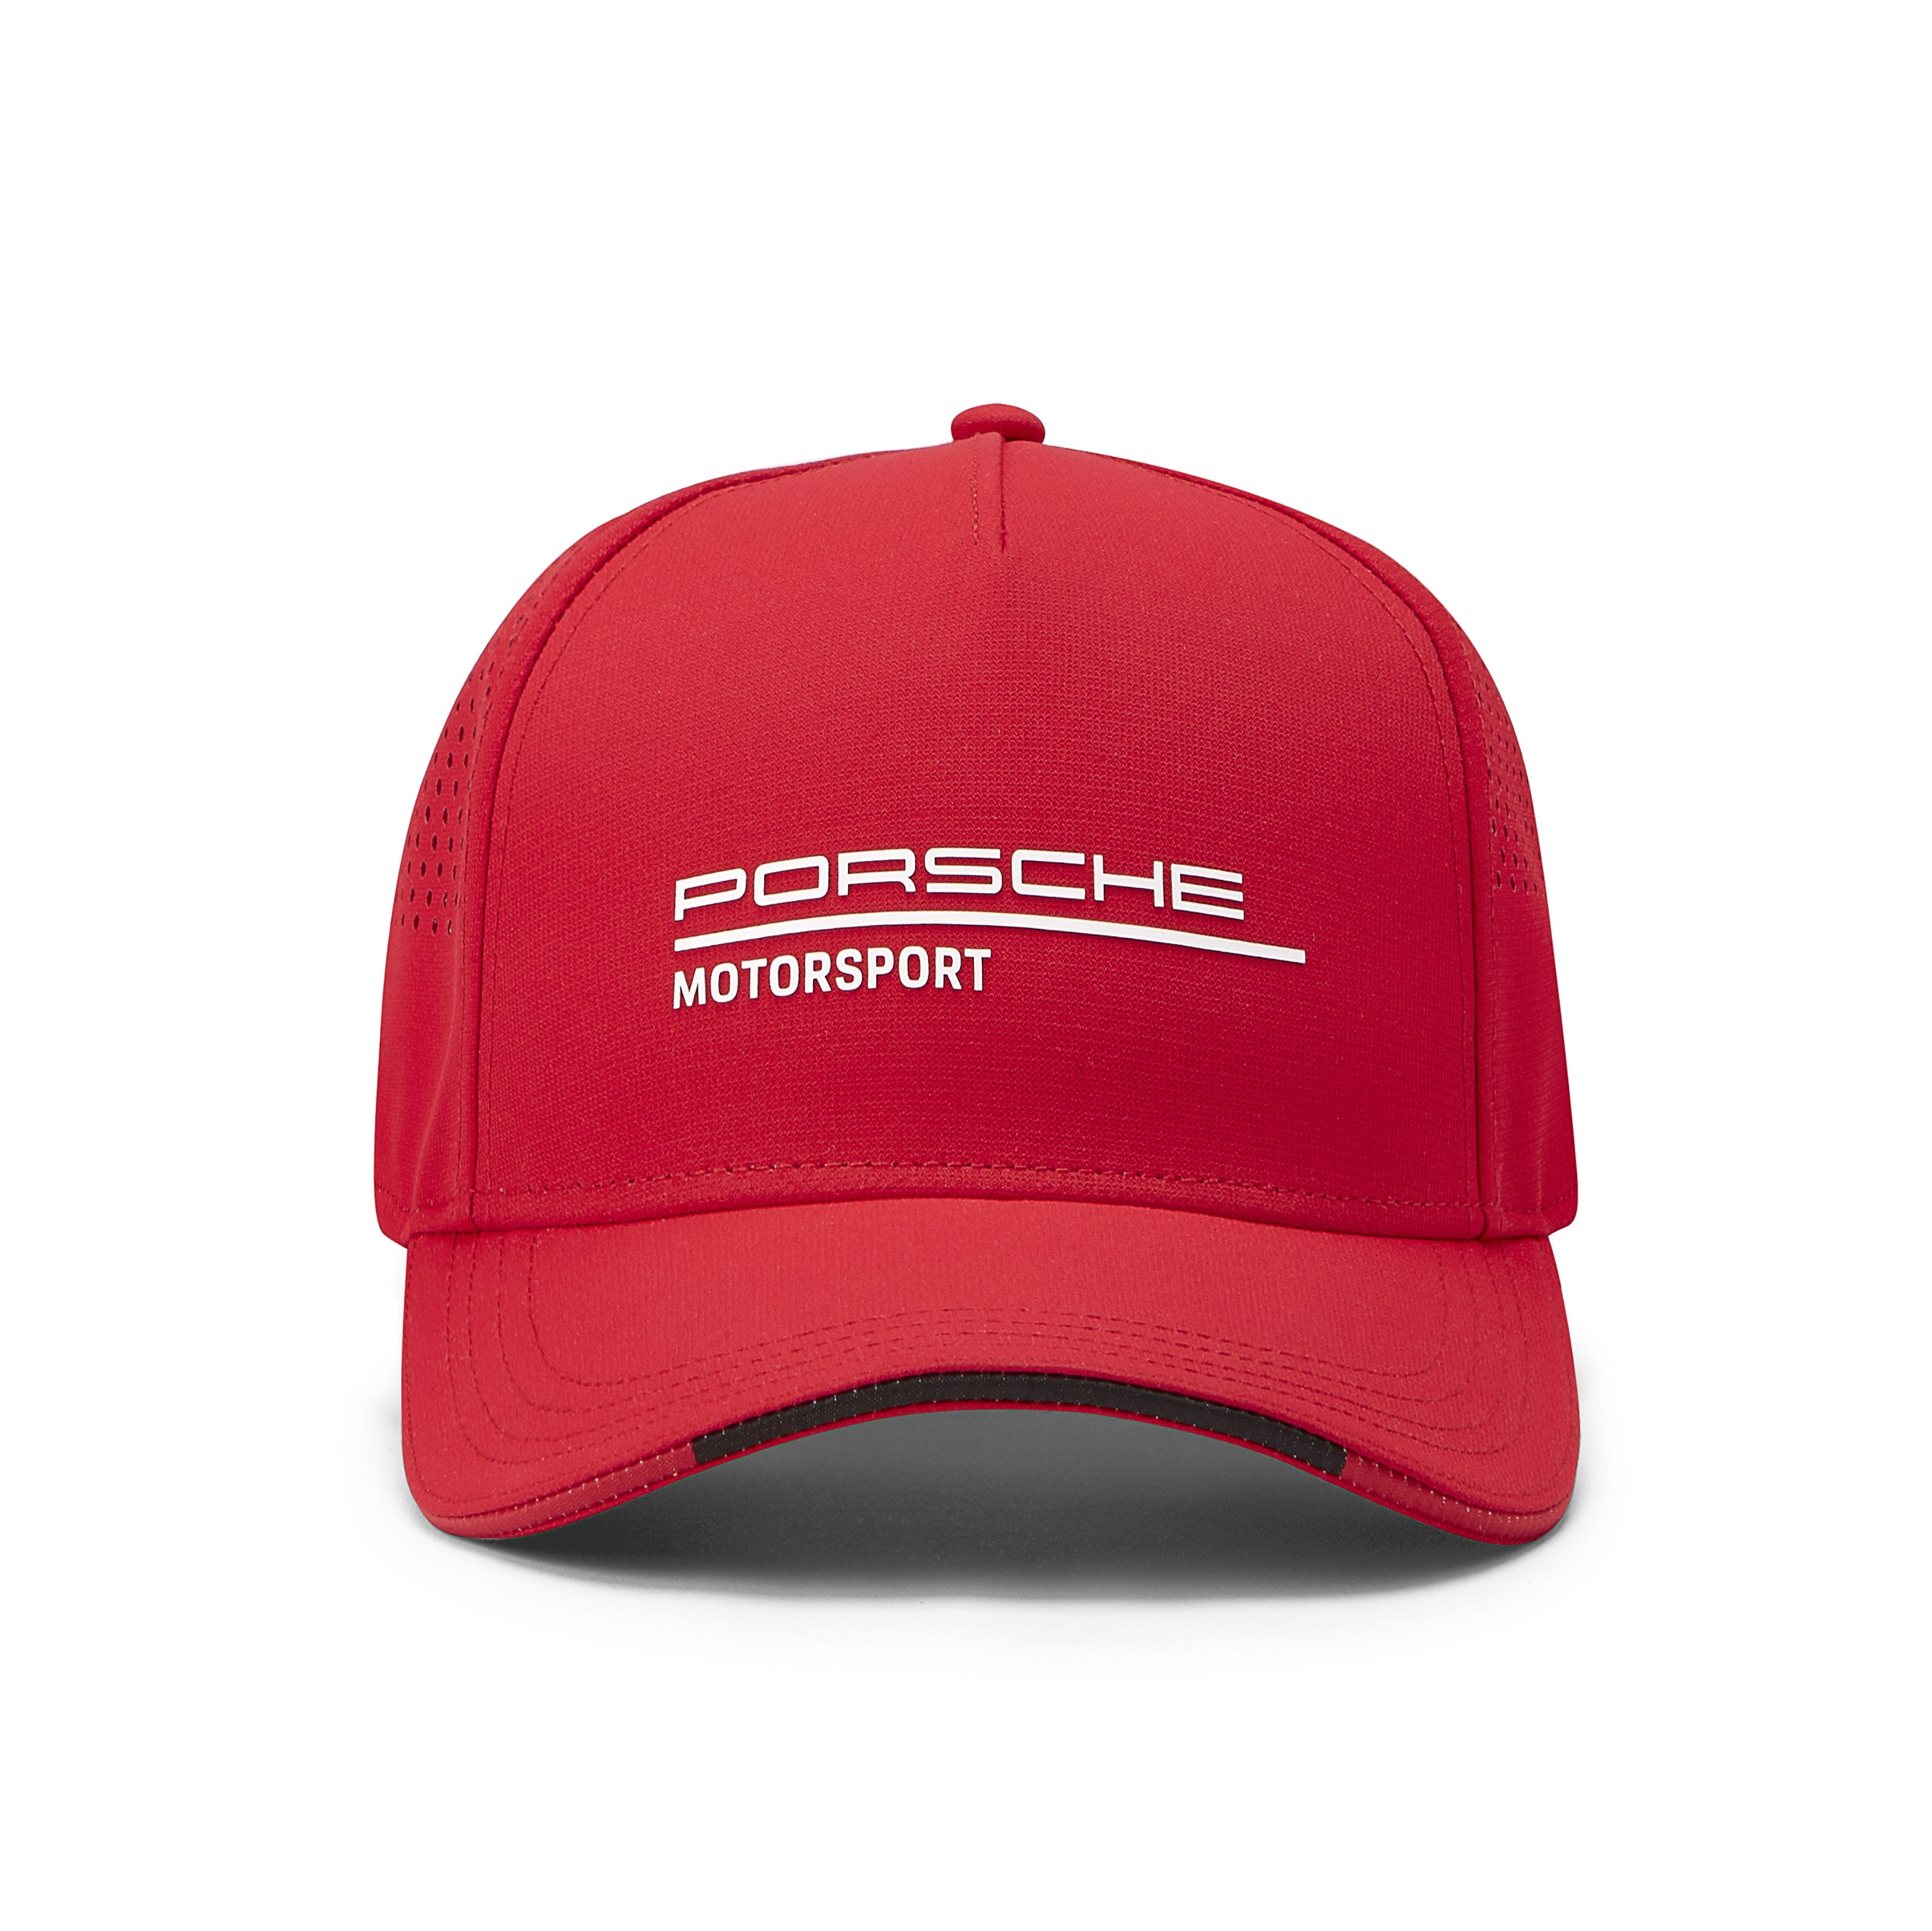 Porsche Motorsport Hat Red